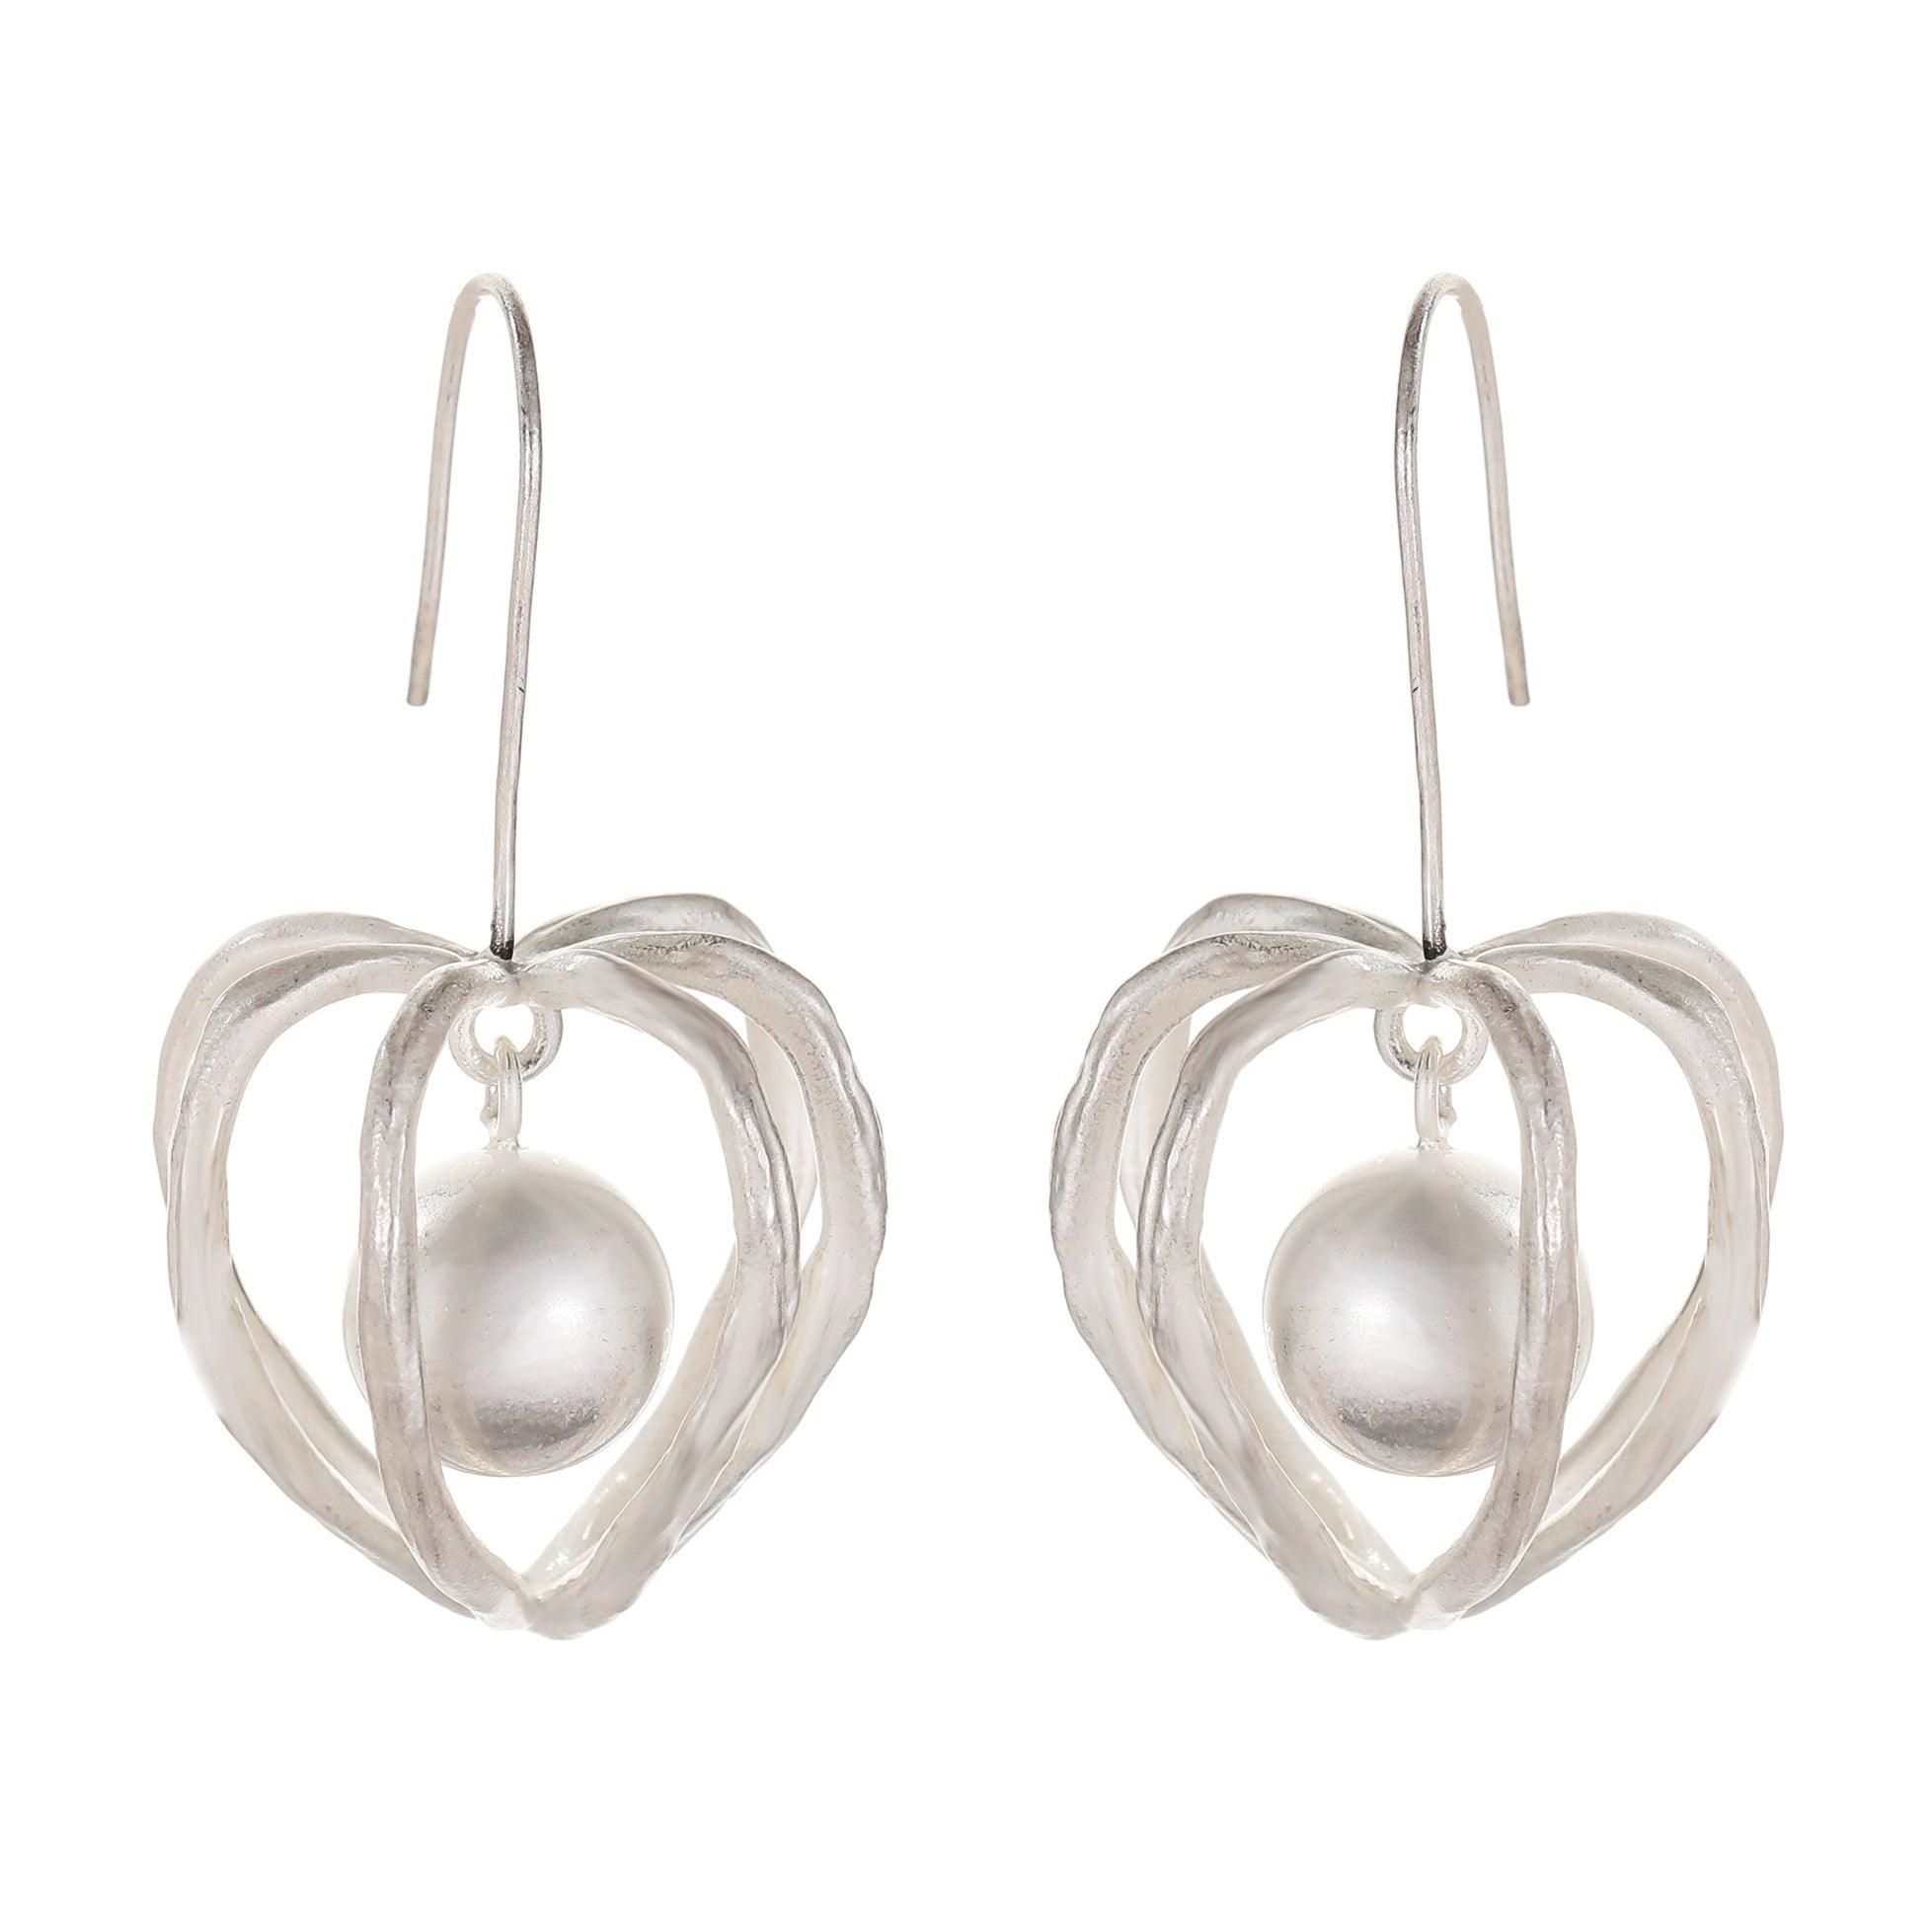 Lantern Sterling Silver Fruit Earrings - Uniqvibe